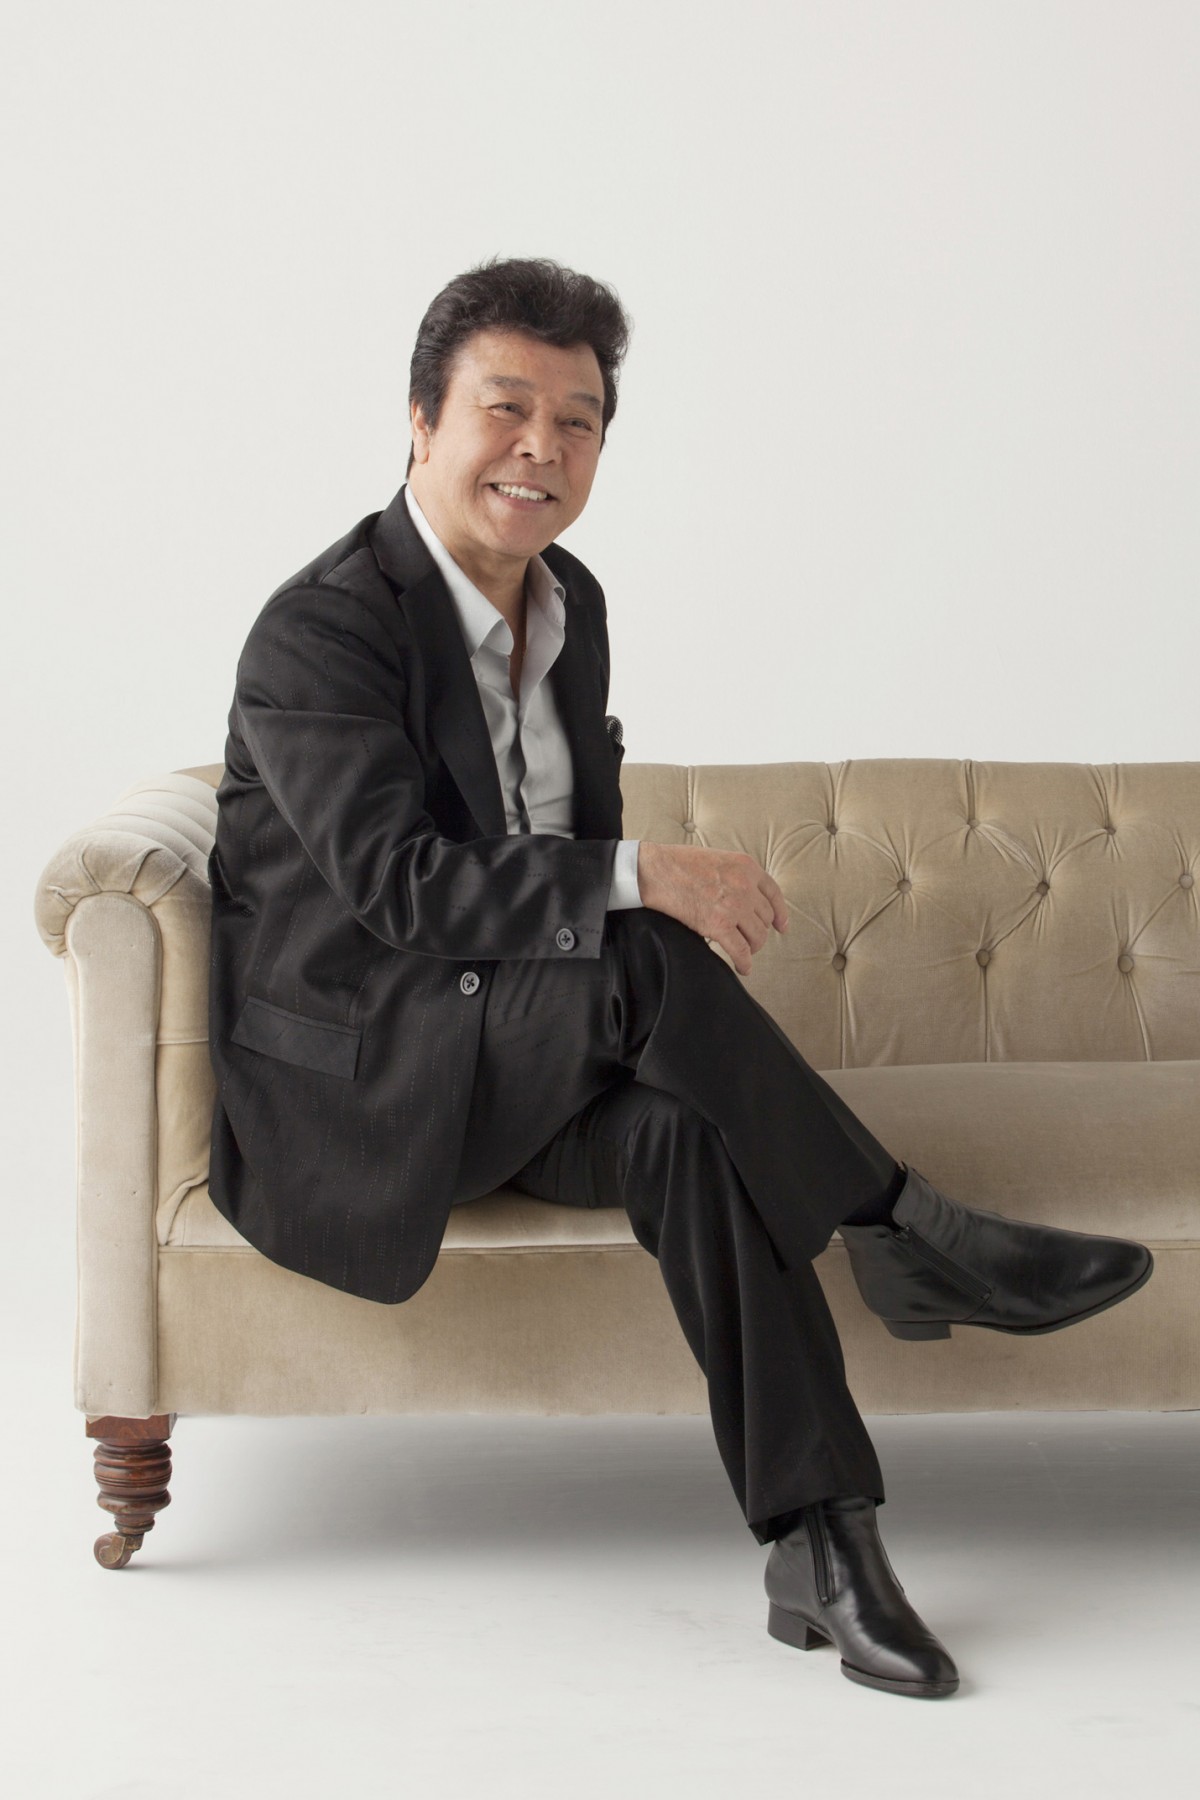 演歌歌手・冠二郎さん、死去 79歳 「炎」大ヒットしバラエティー番組でも活躍 | ORICON NEWS